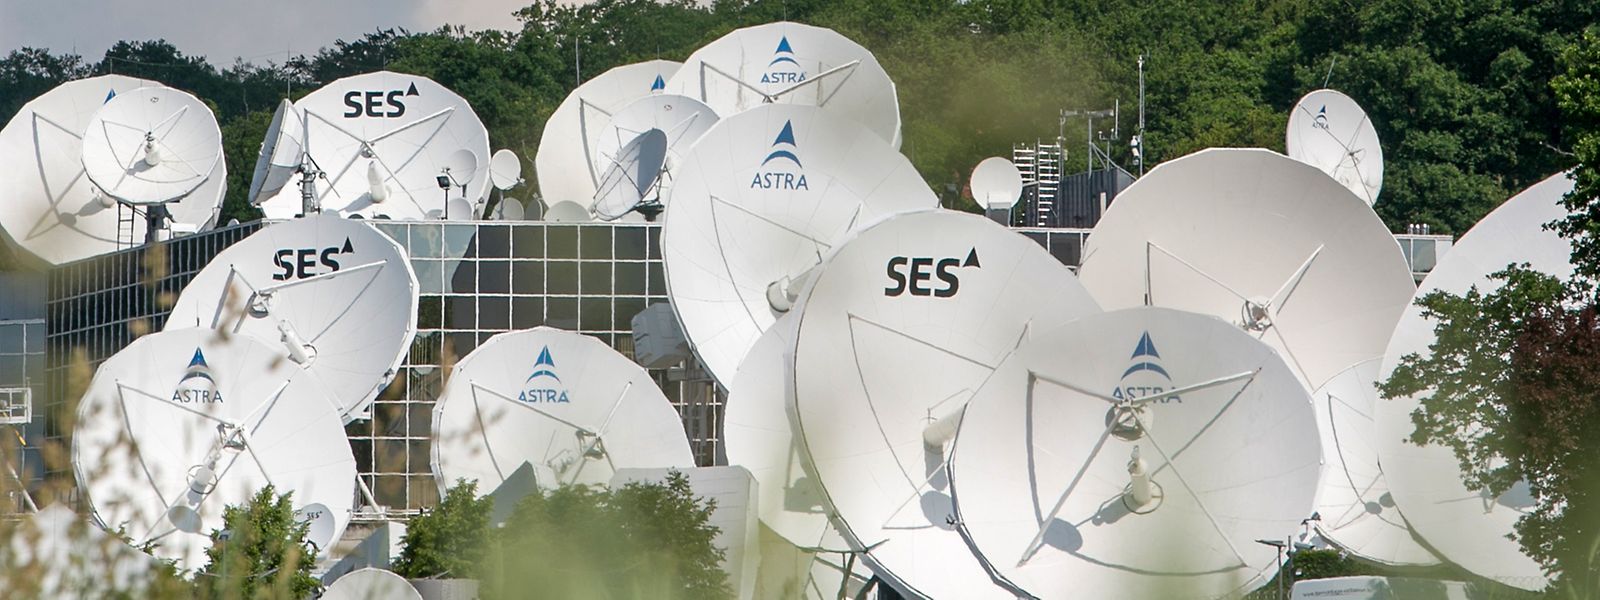 Der Satellitenbetreiber SES stellt sich neu auf.